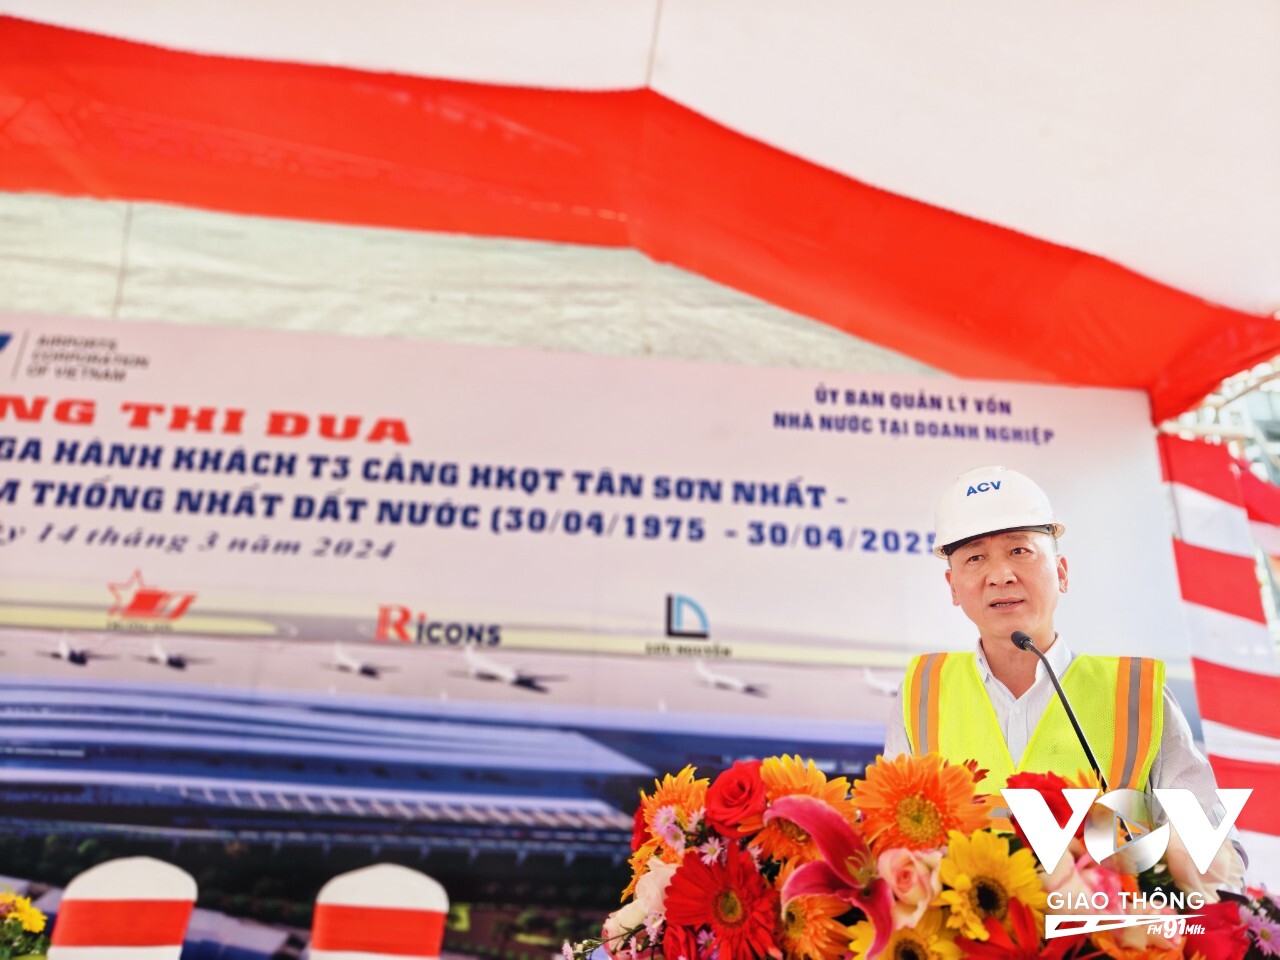 Ông Lê Khắc Hồng - trưởng Ban quản lý dự án nhà ga T3 cho biết Công tác thi công các hạng mục công trình đang được kiểm soát và thực hiện đúng với kế hoạch tiến độ đã đề ra.